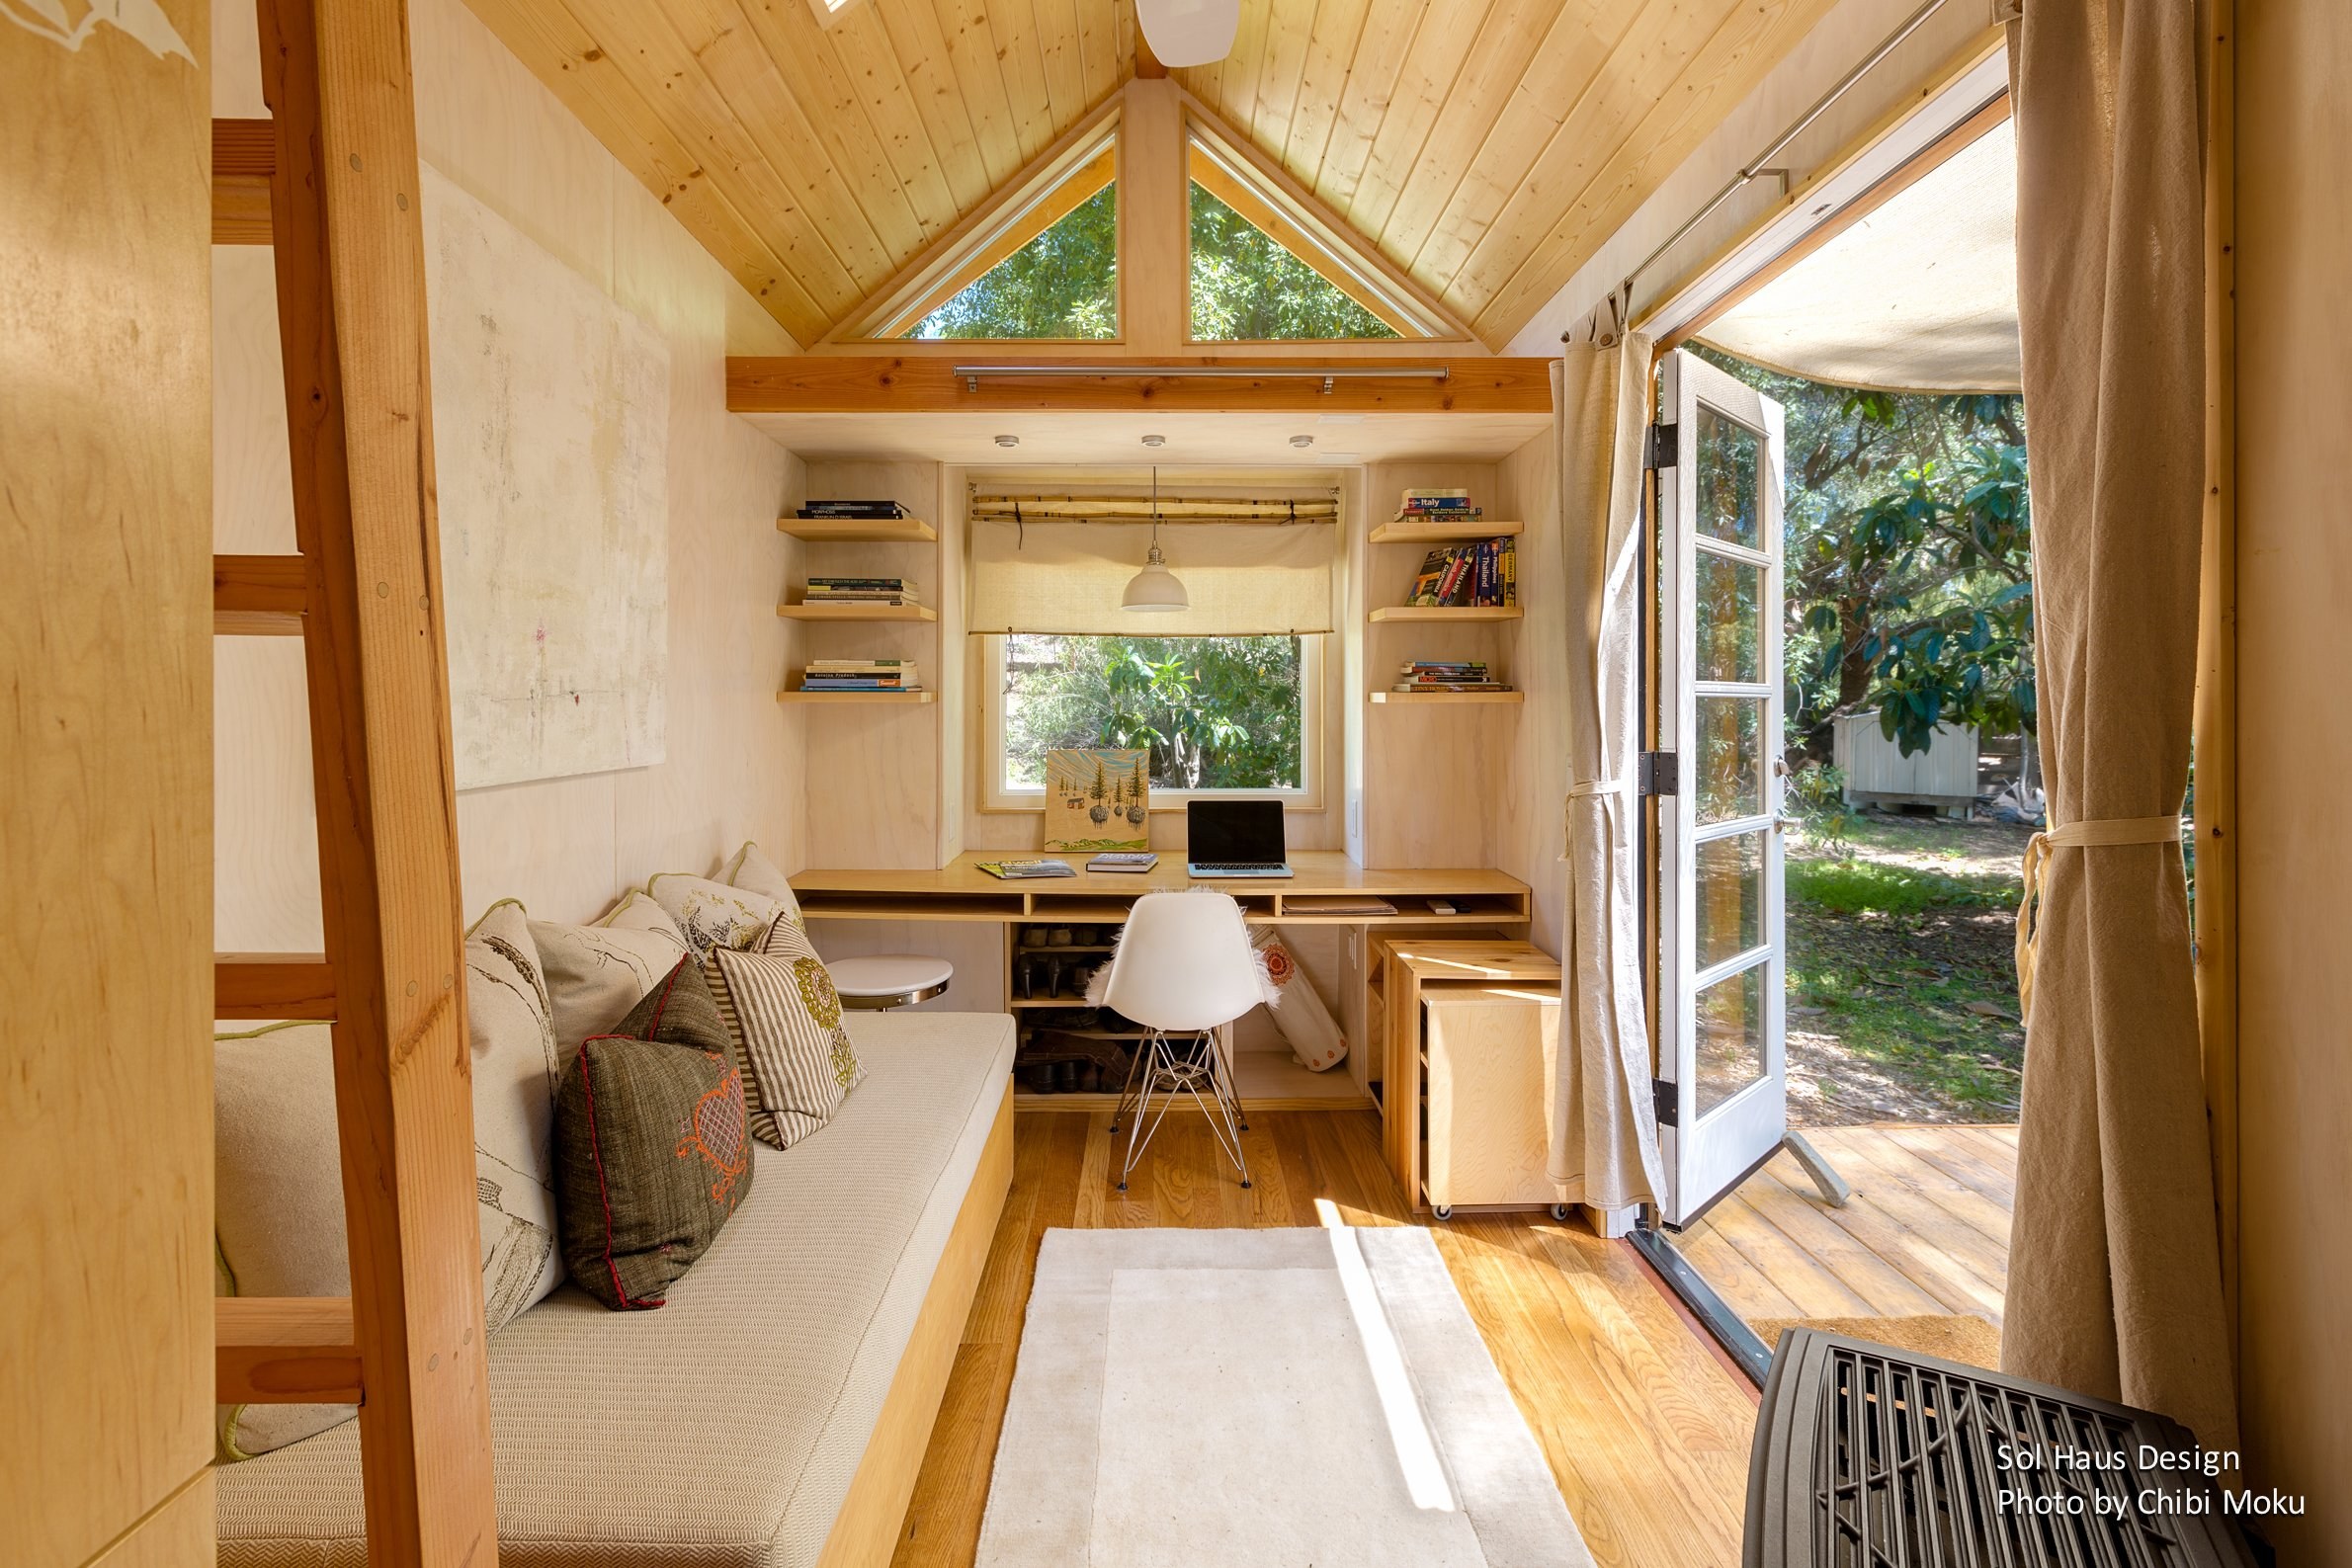 Красивый снаружи и уютный внутри: облагораживаем свой маленький дачный домик